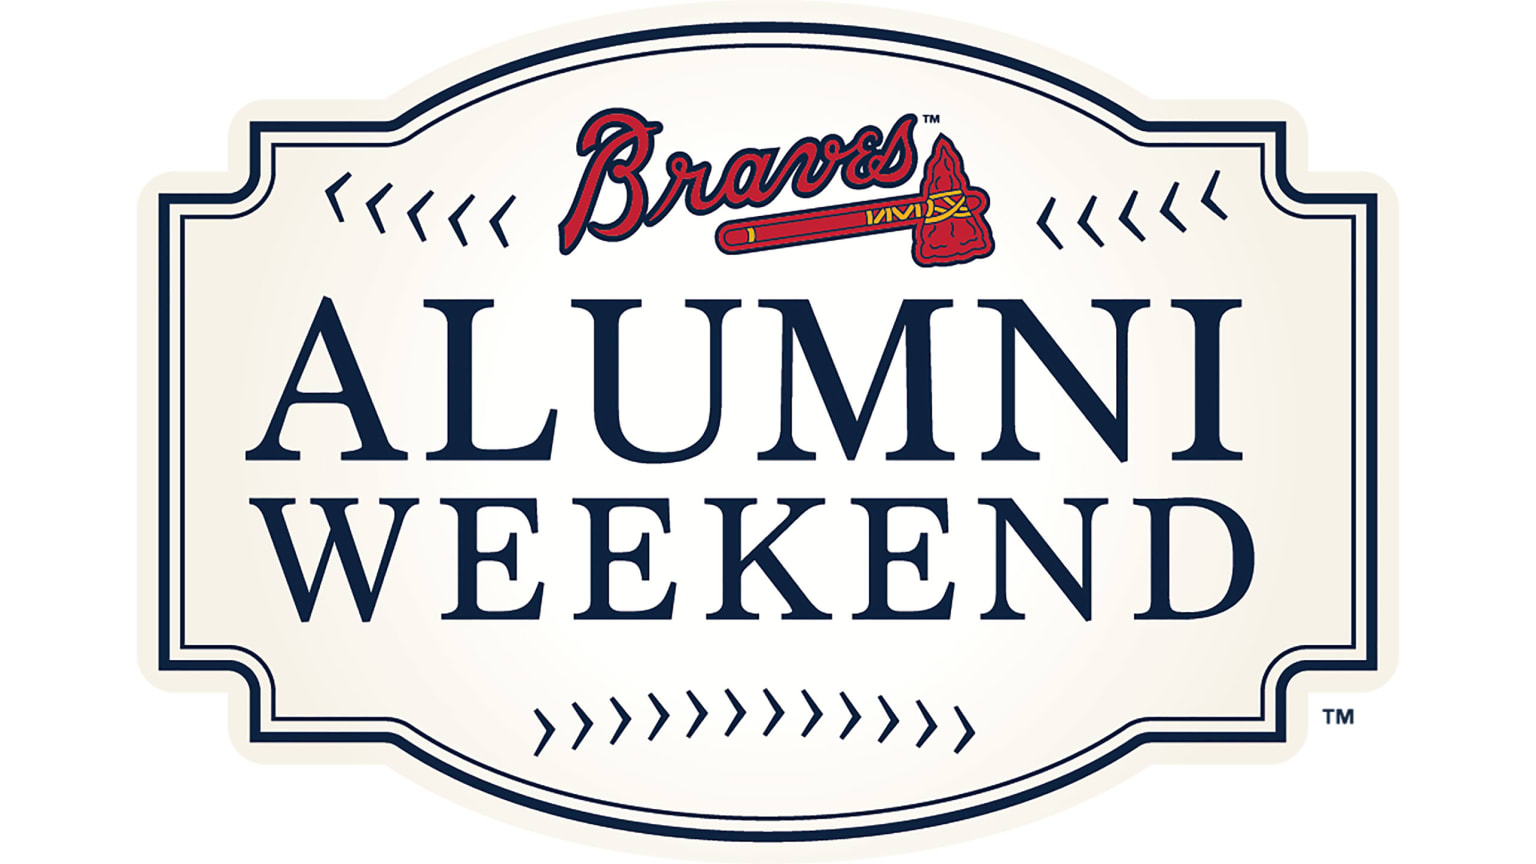 Alumni Weekend Atlanta Braves